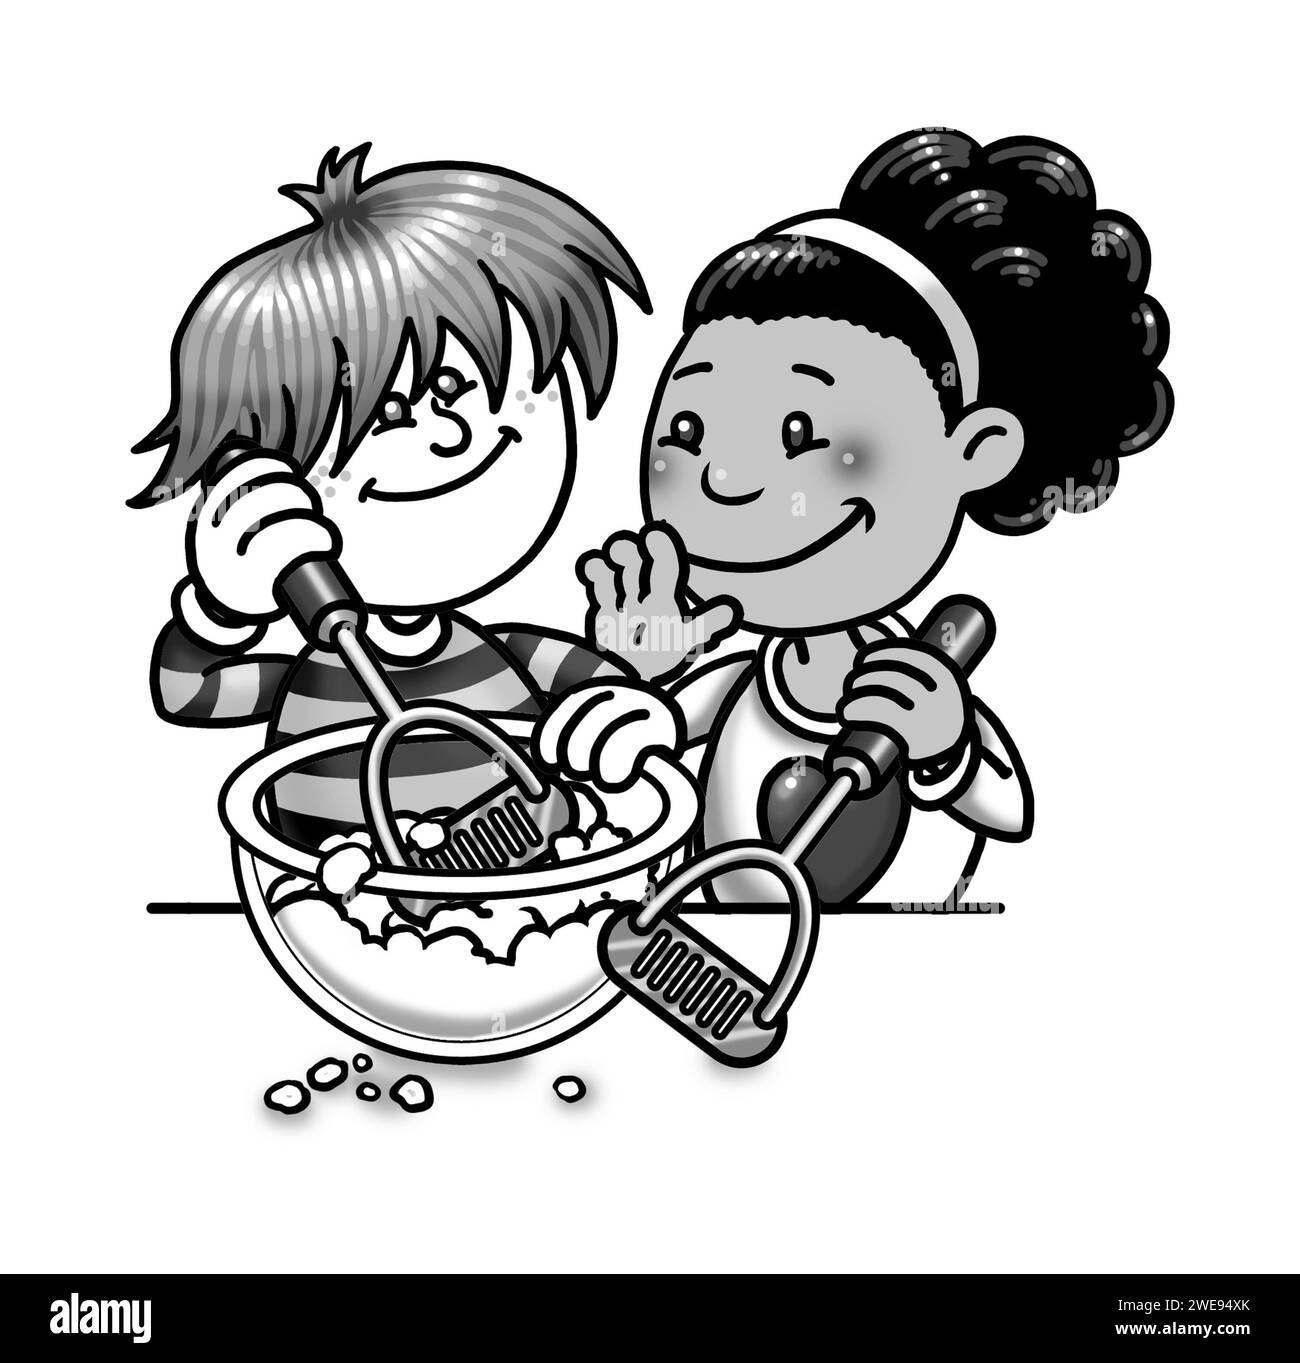 Illustrazione artistica in bianco e nero, ragazza nera, ragazzo bianco, cucina insieme, schiacciare le patate in una ciotola con schiacciapatate, attività educativa, famiglia Foto Stock